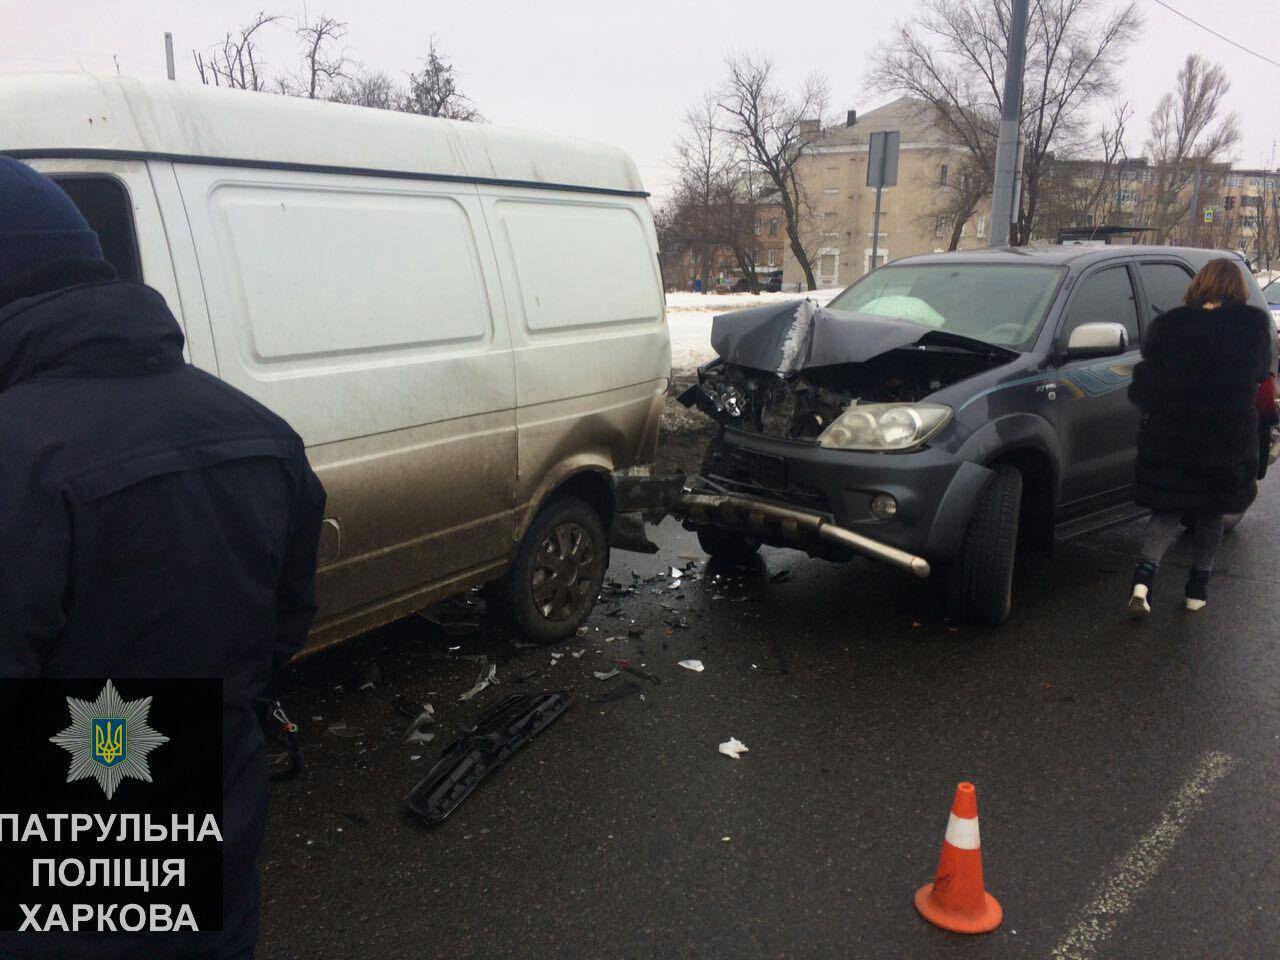 Toyota влетела в припаркованные машины: двое пострадавших (фото)